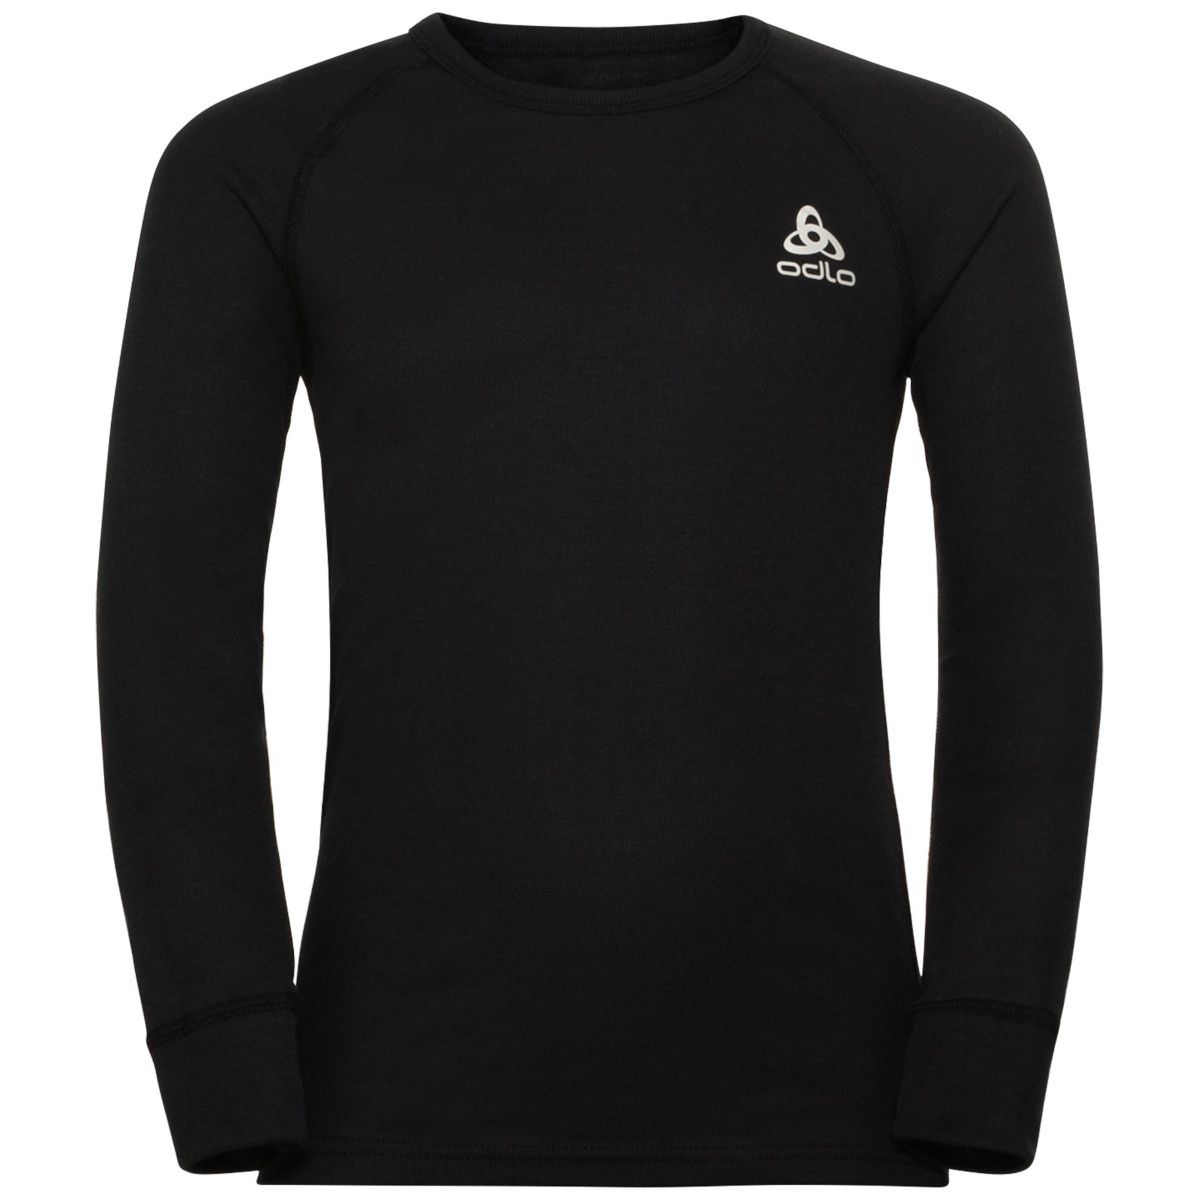 Produktbild von Odlo Active Warm Langarm-Unterhemd Kinder - schwarz